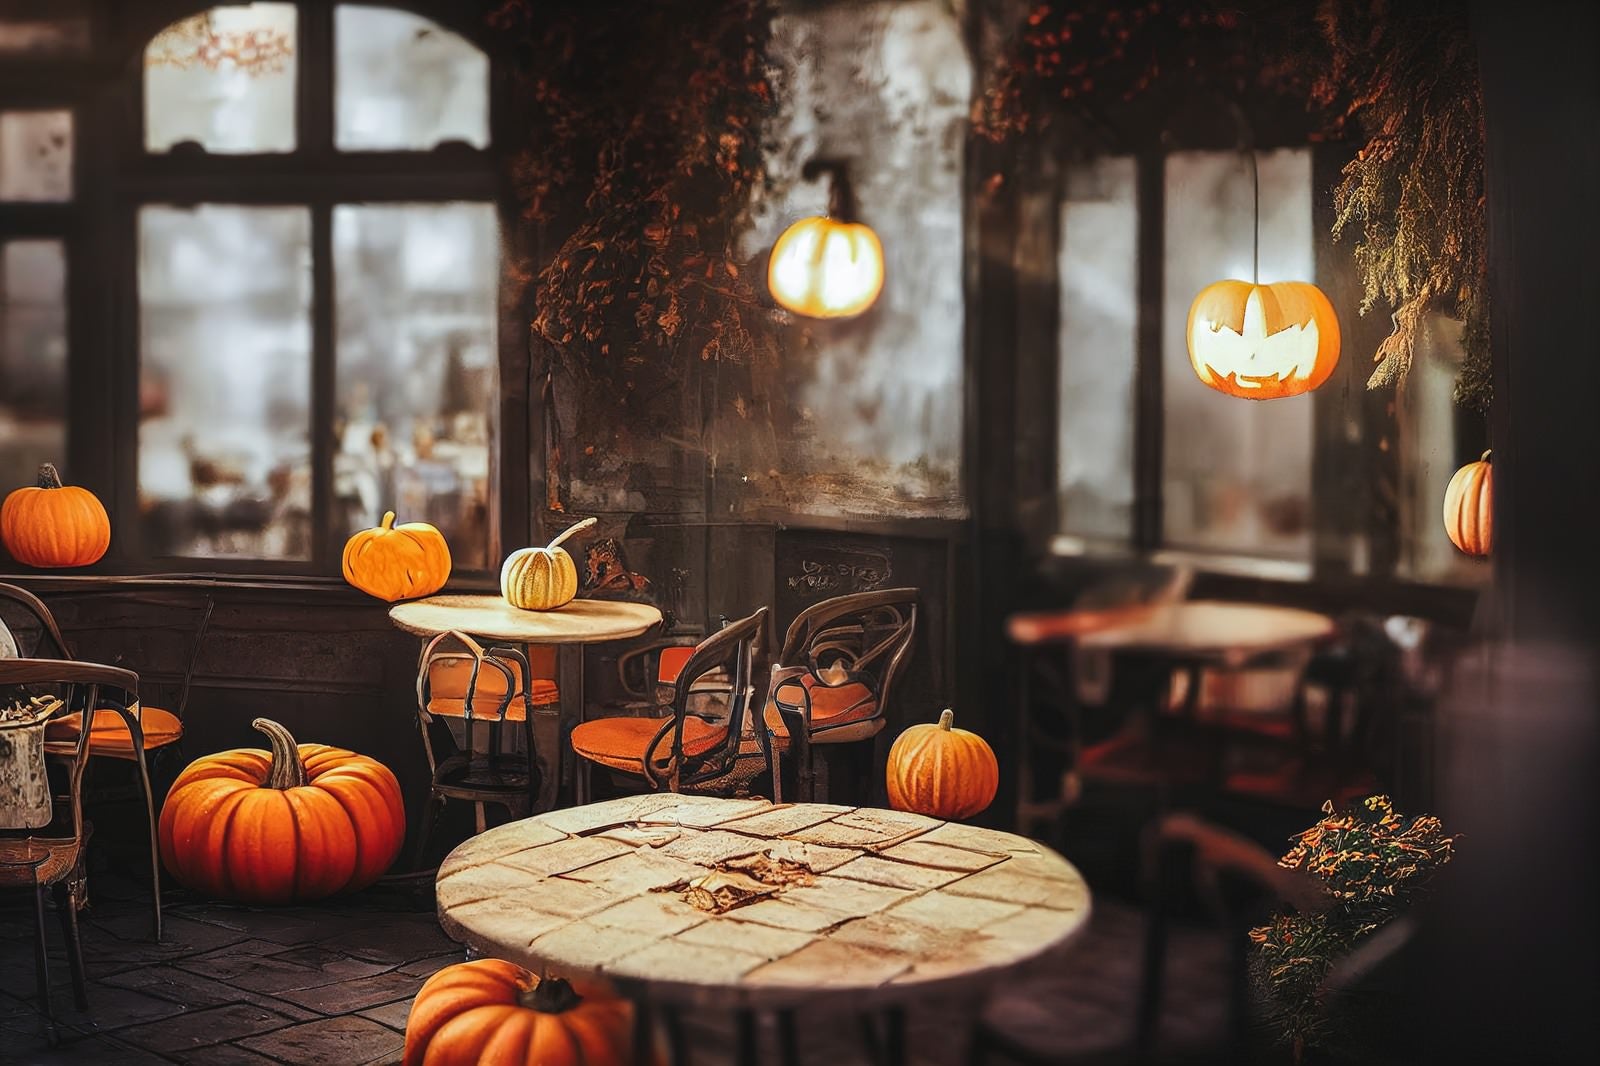 「店内にかぼちゃが蔓延る」の写真